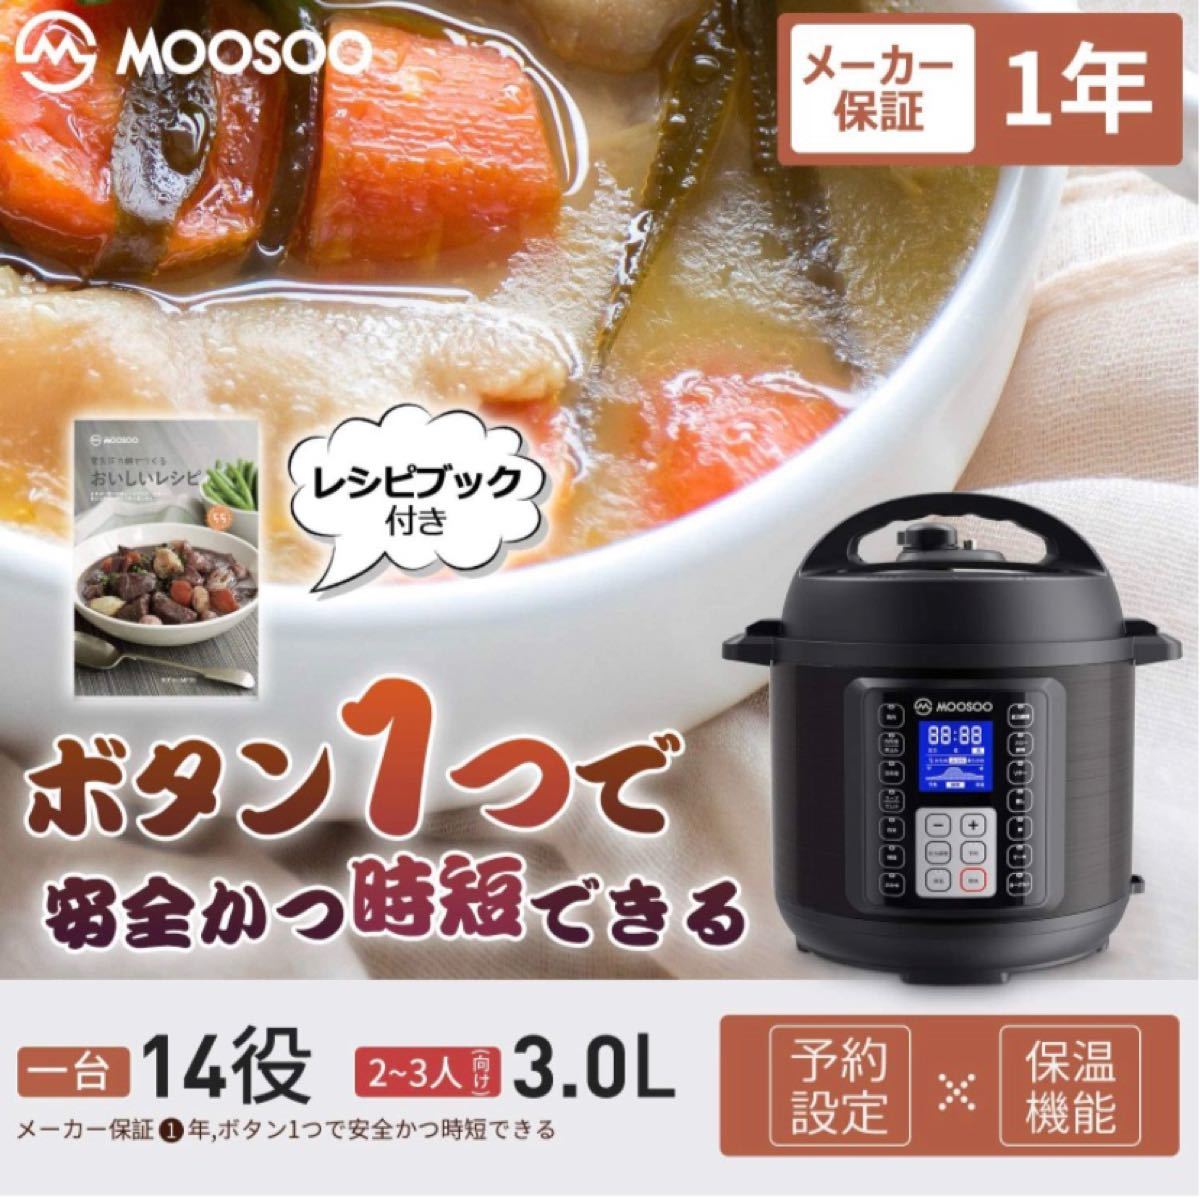 【レシピブック付き】MOOSOO(モーソー) MP30 電気圧力鍋 3.0L